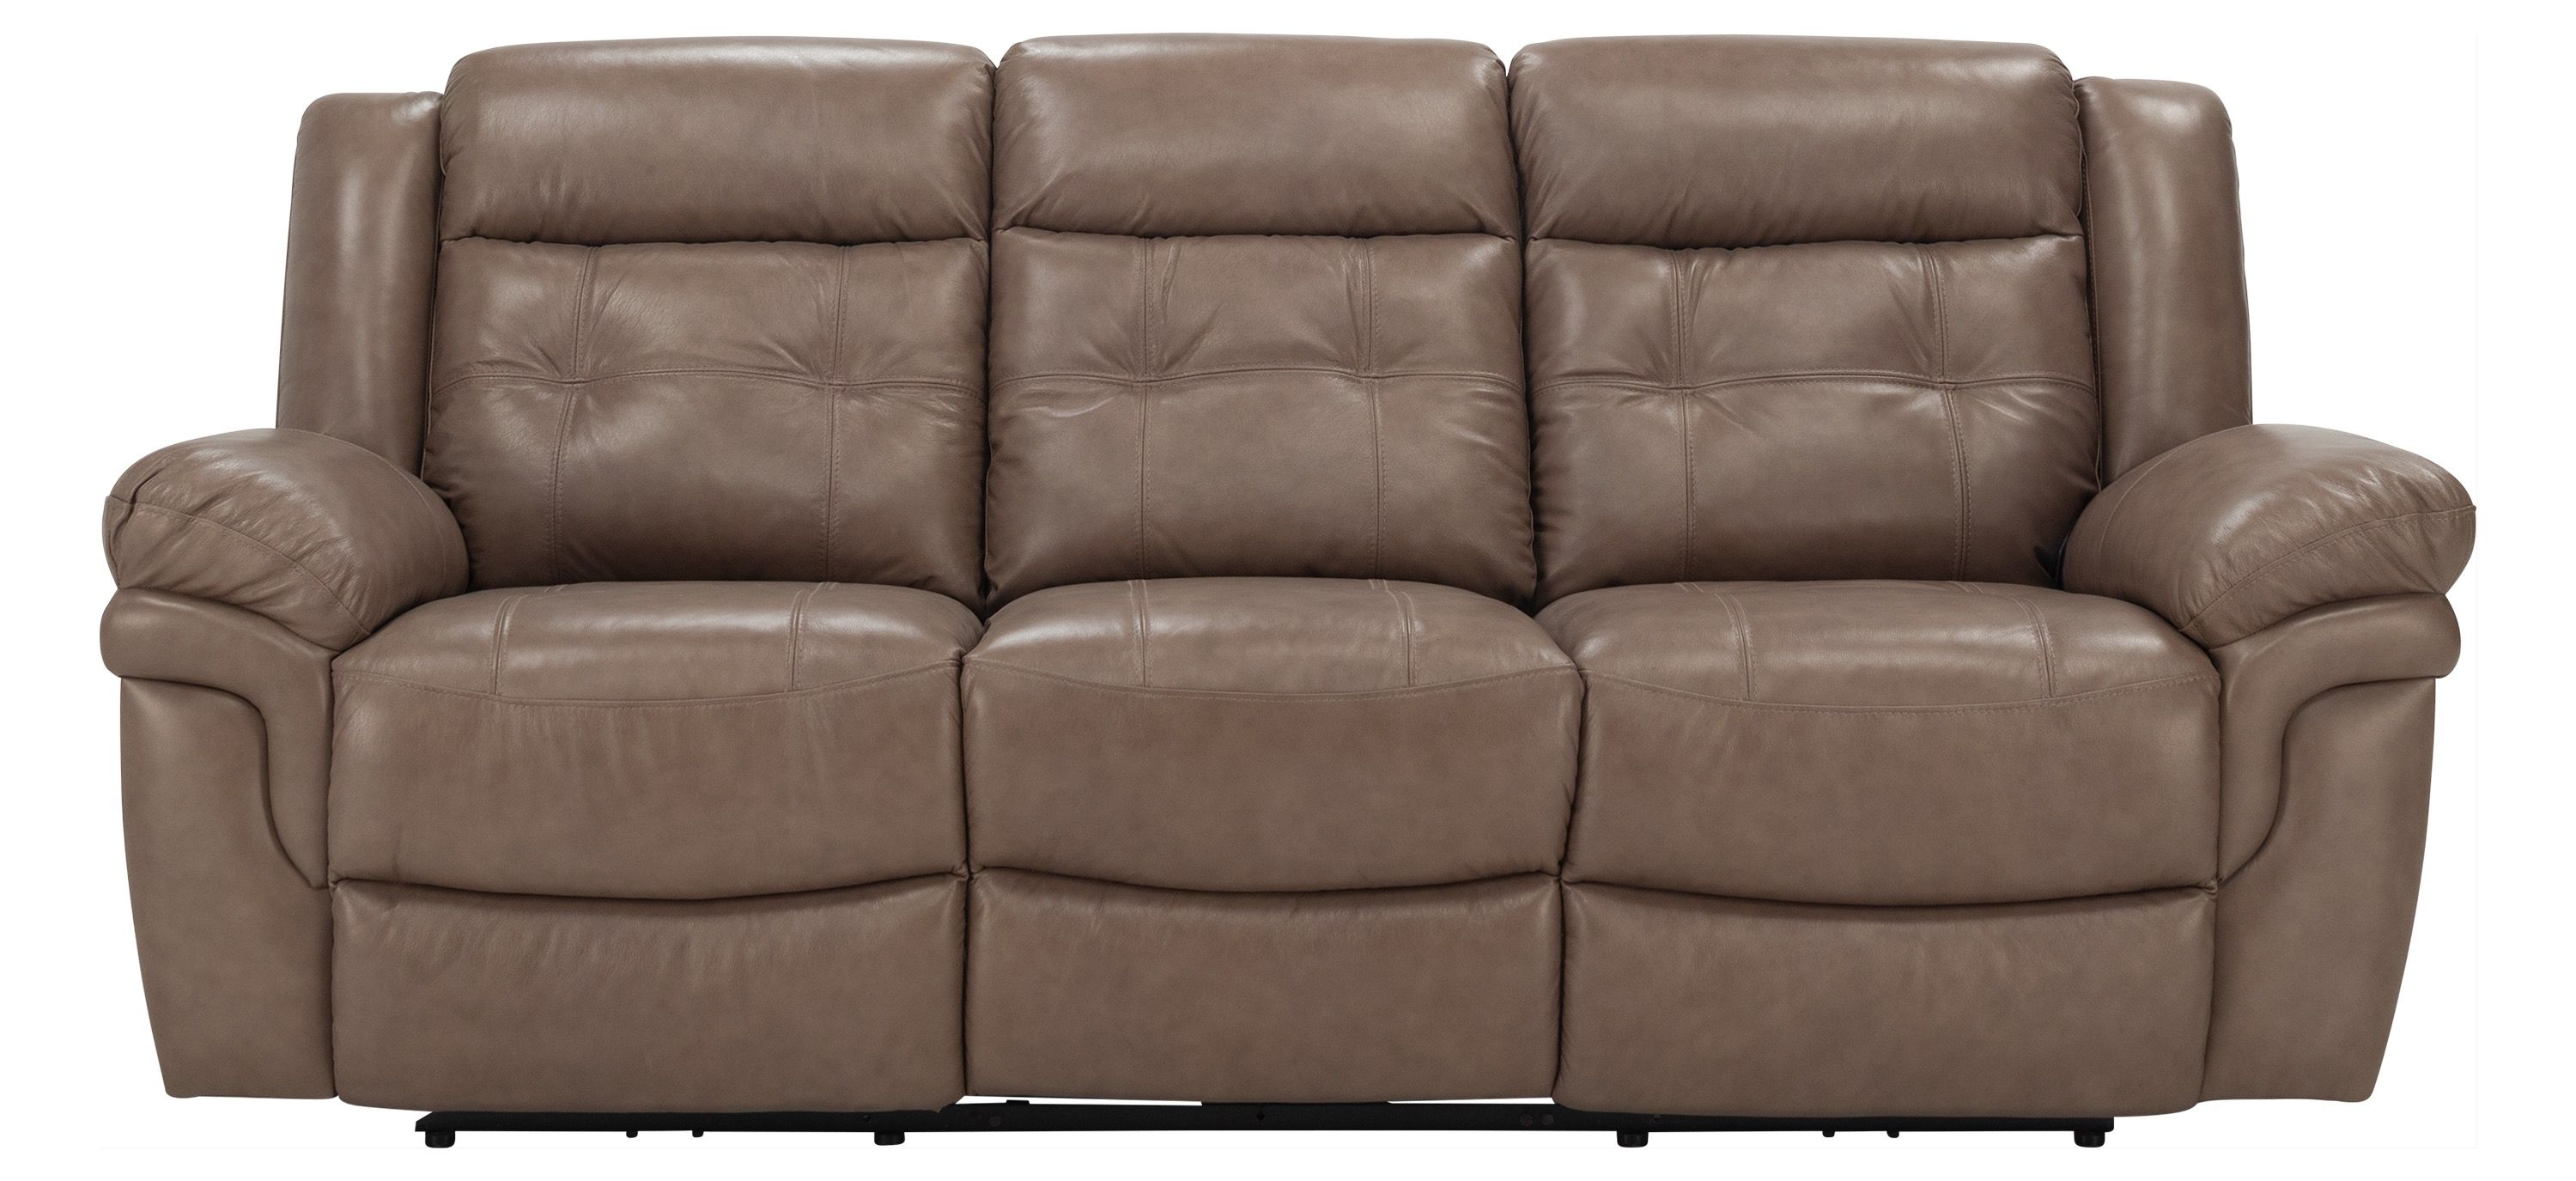 Gorton Leather Power Sofa